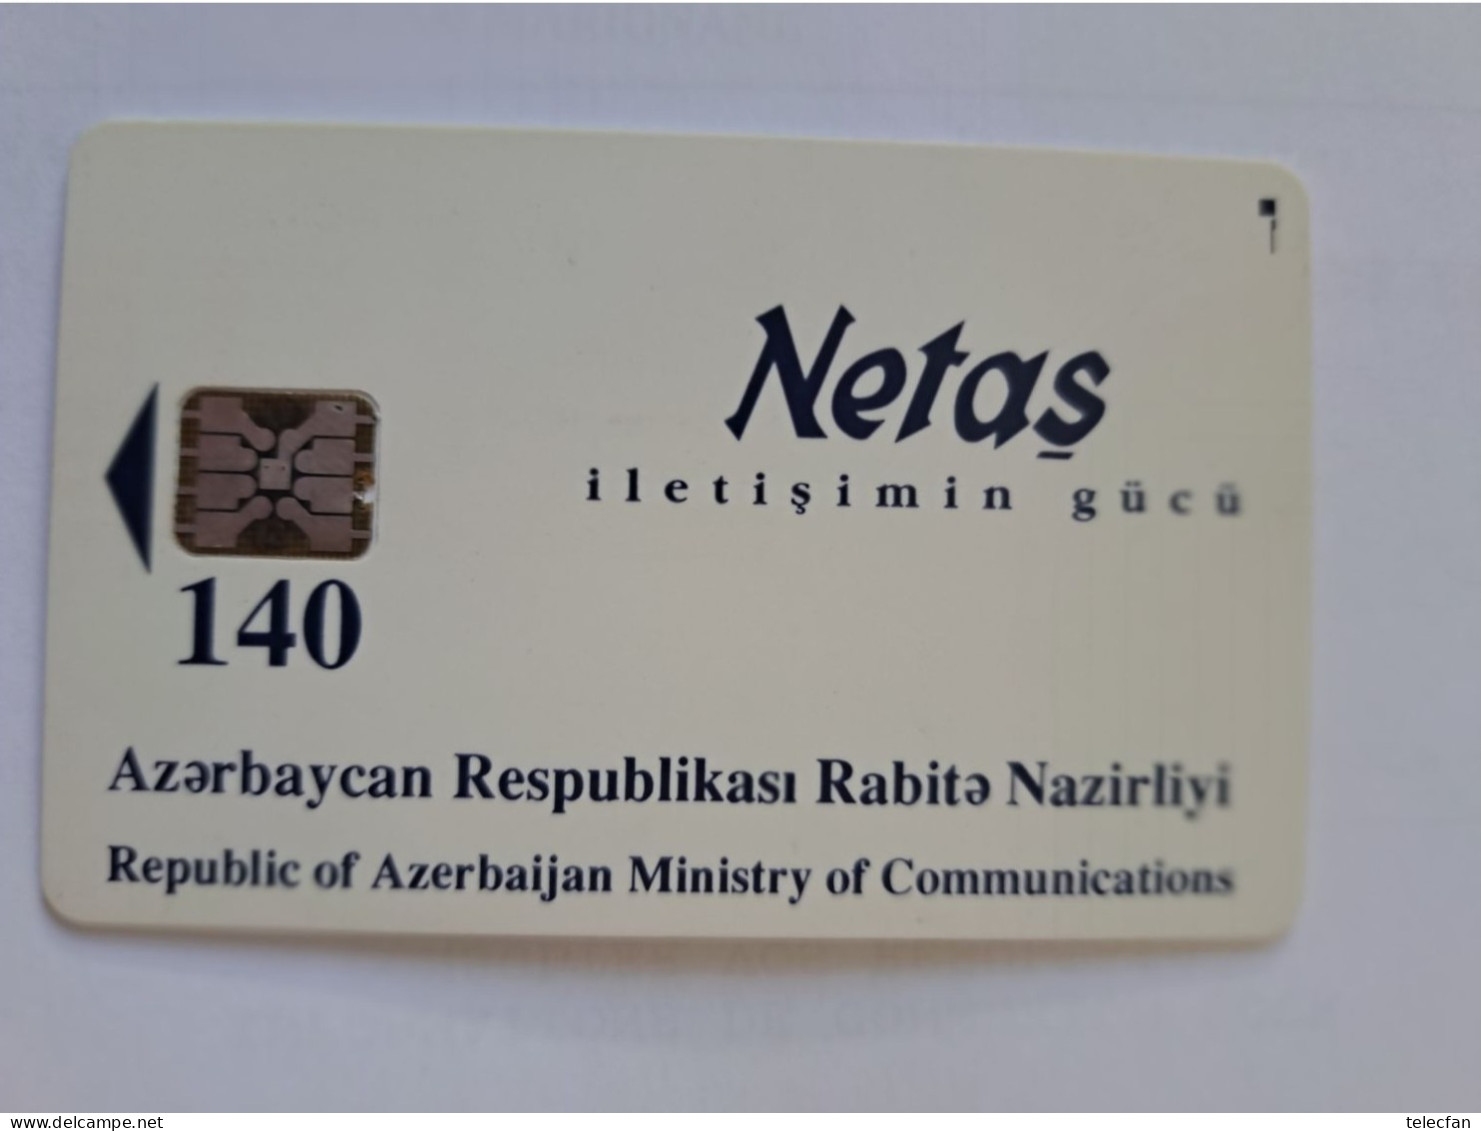 AZERBAIDJAN CHIP CARD NETAS ALLO BAKI 140U UT - Azerbaïjan